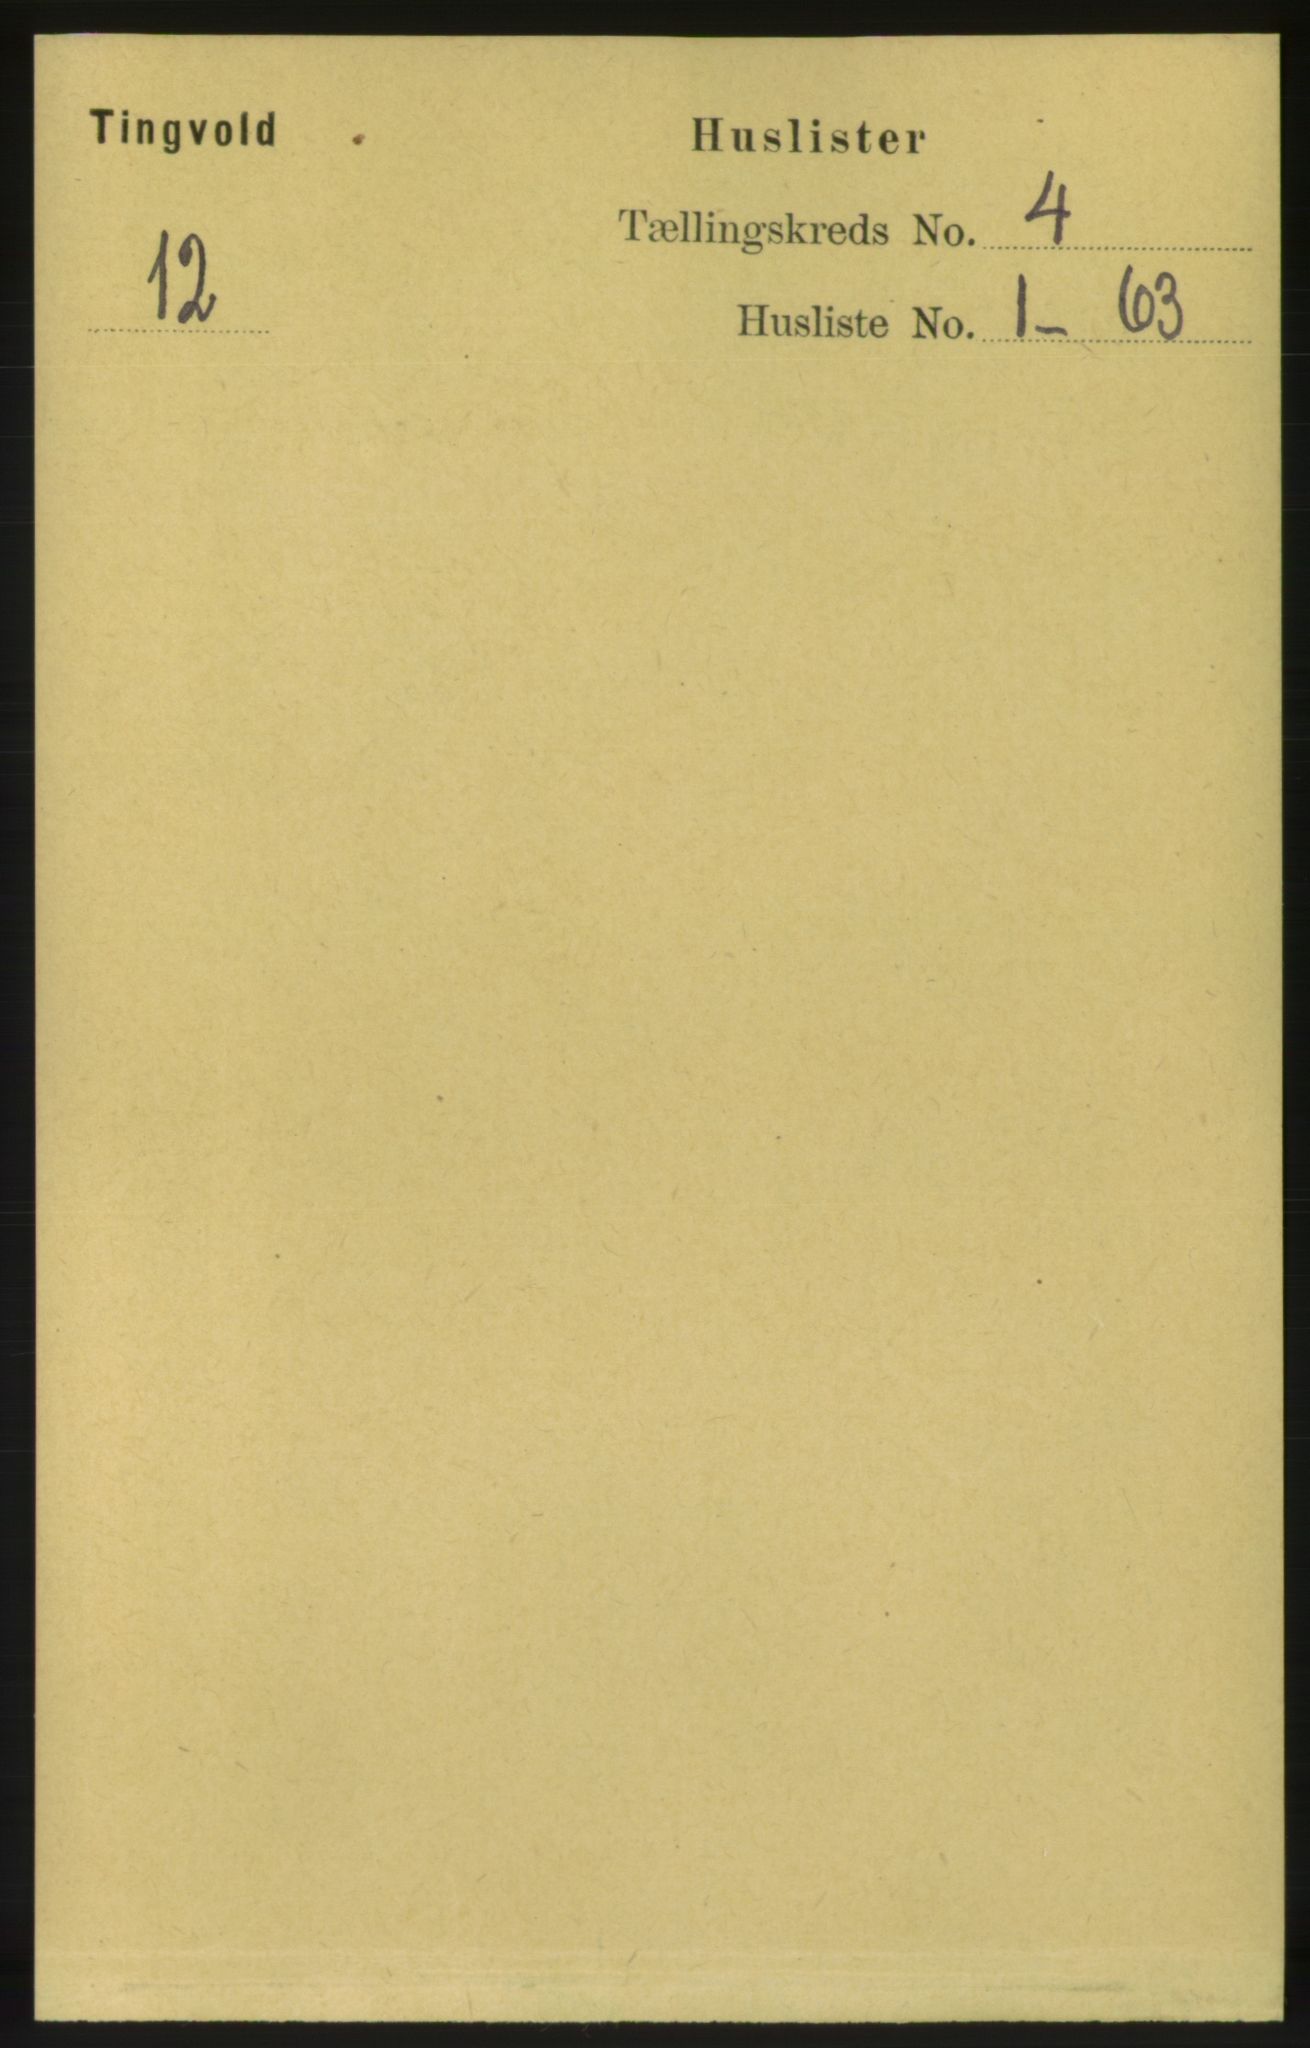 RA, Folketelling 1891 for 1560 Tingvoll herred, 1891, s. 1529